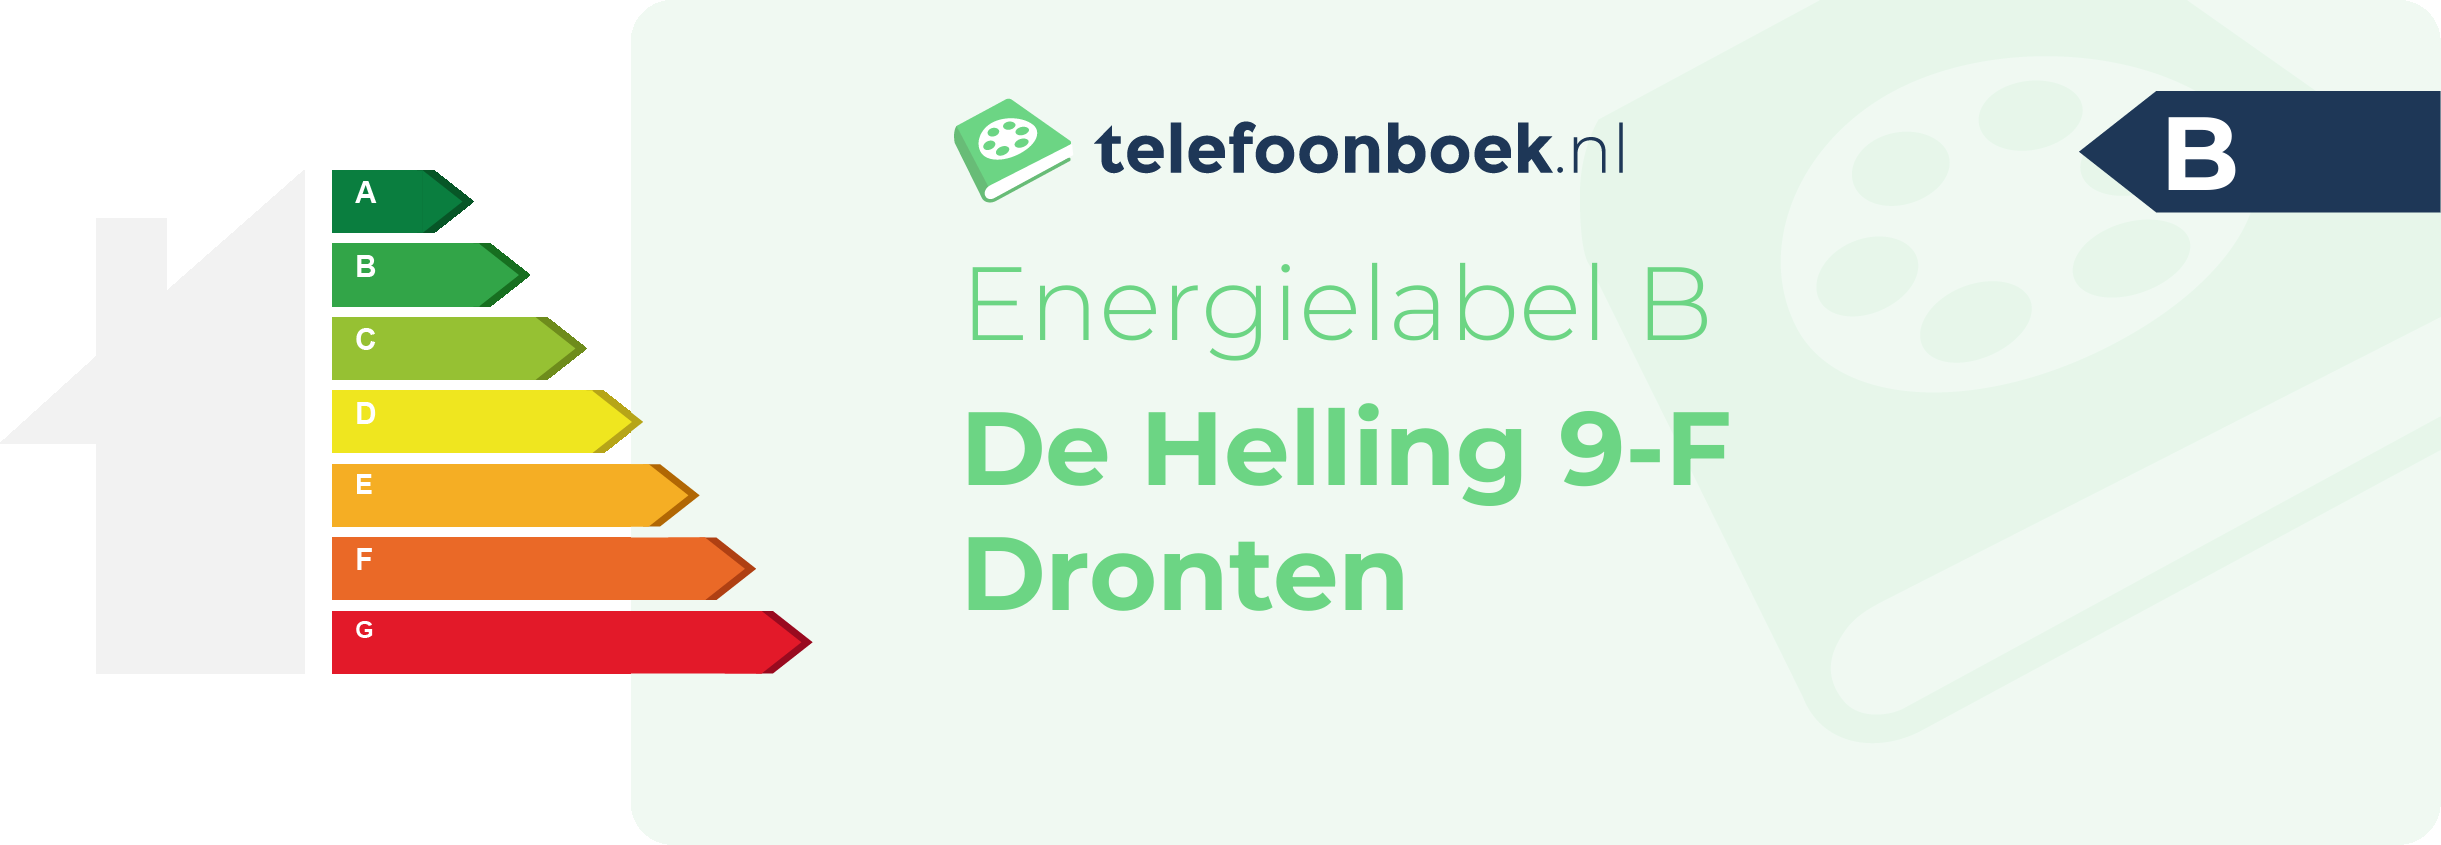 Energielabel De Helling 9-F Dronten